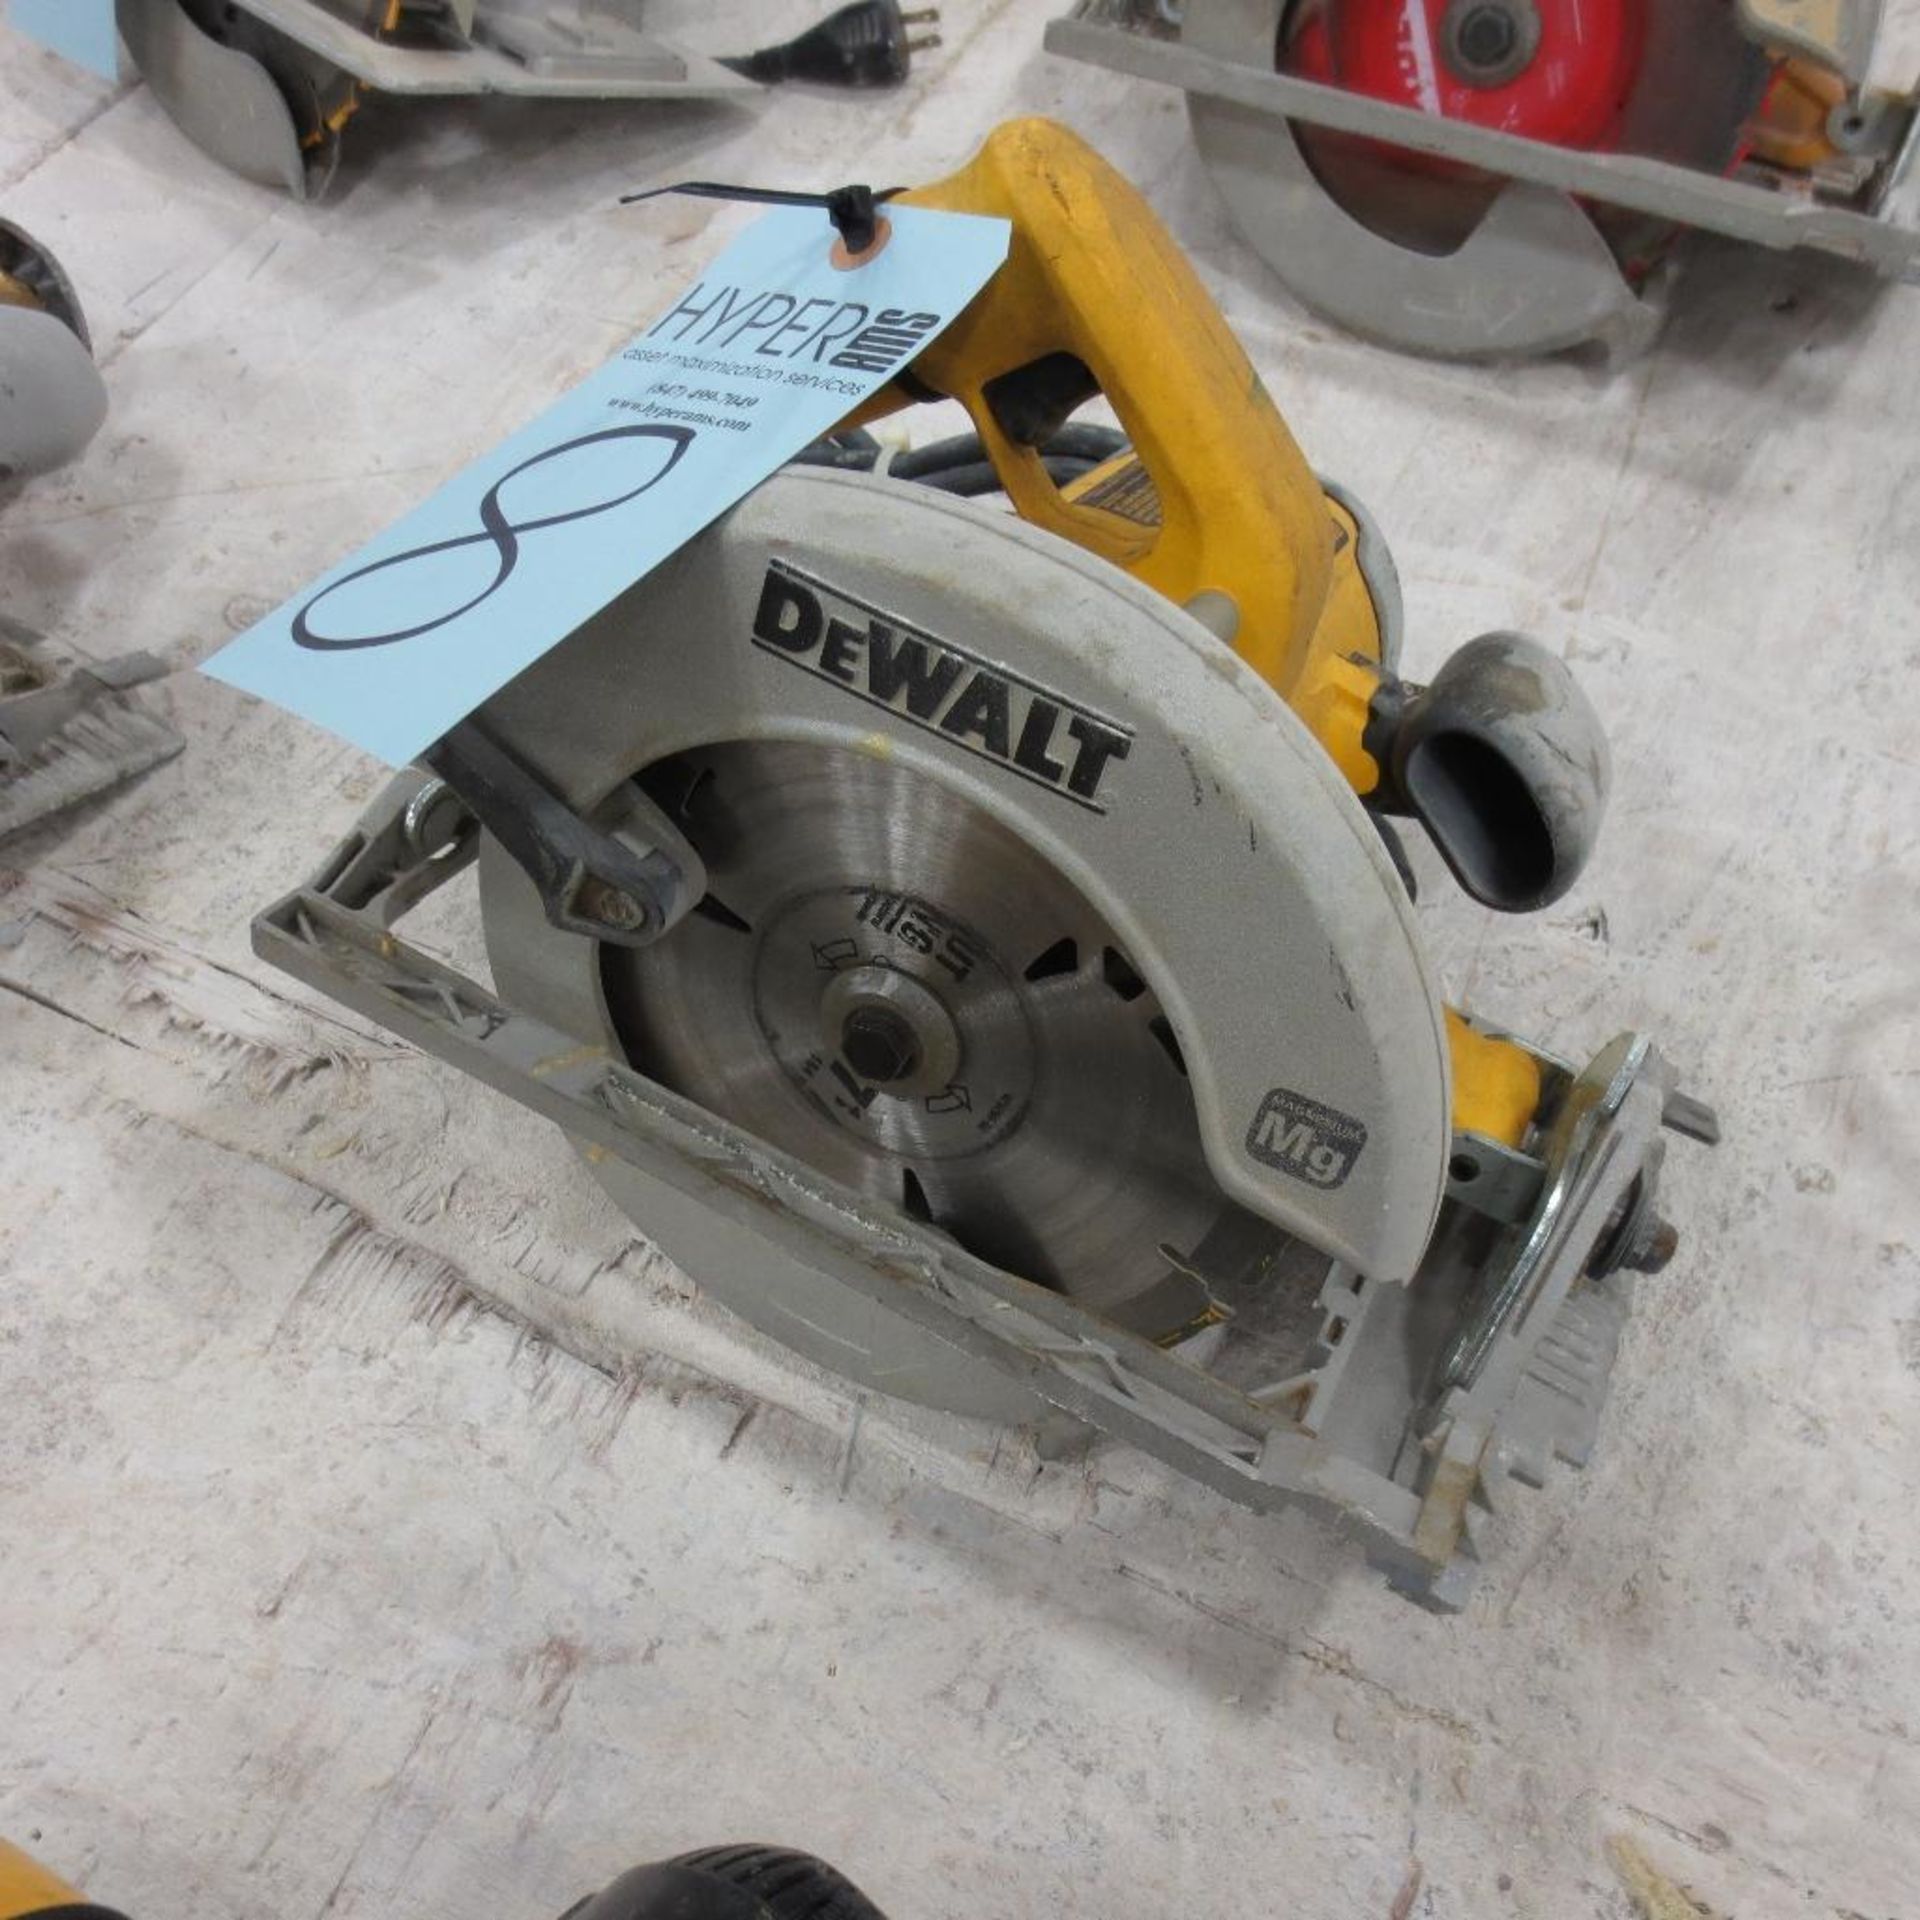 Dewalt 7 1/4" Circular Saw, Model DW368